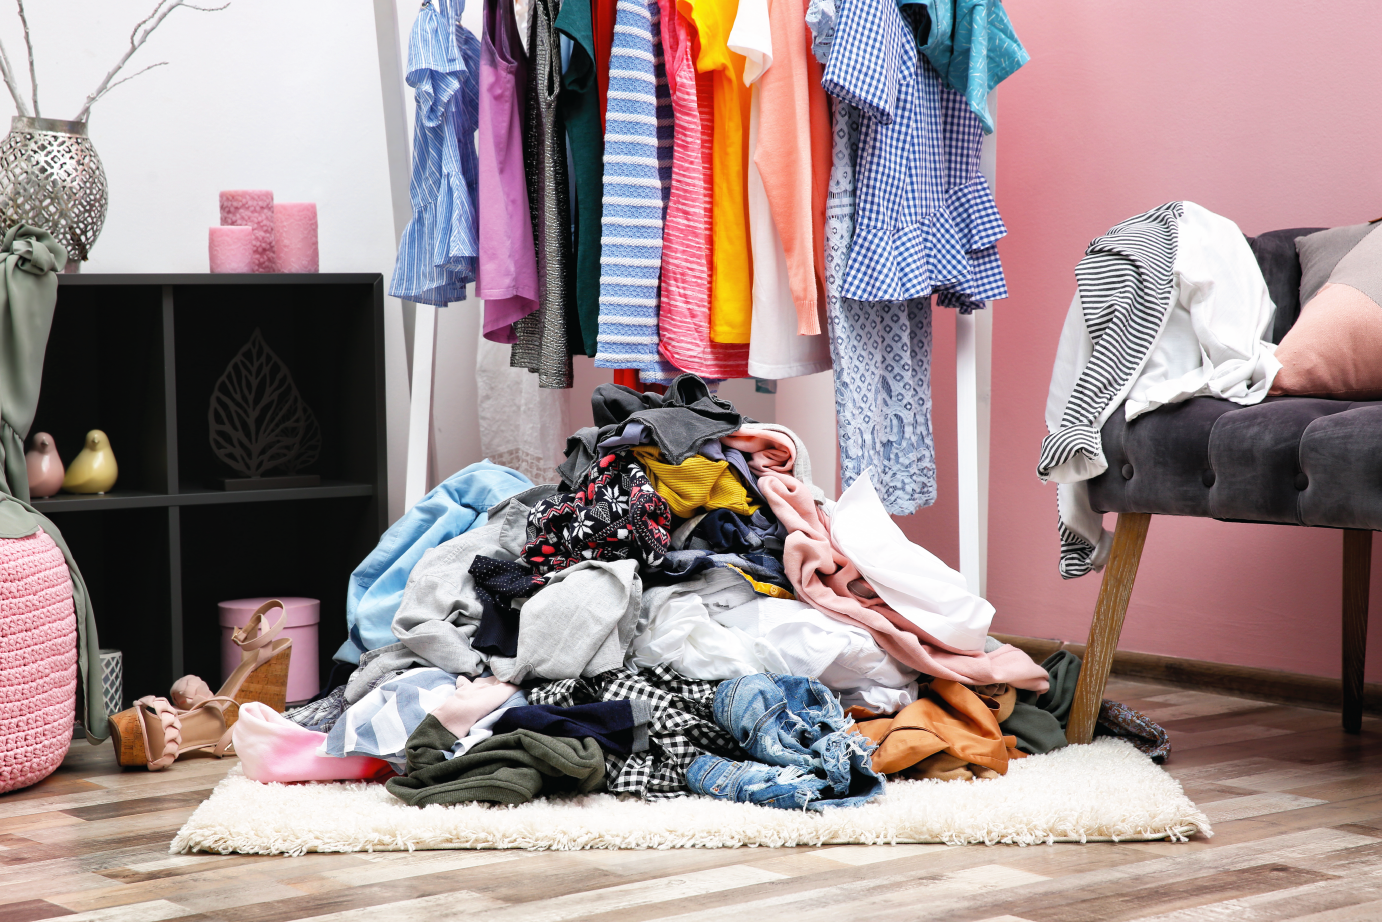 Как навести порядок в шкафу: 15 вещей из одежды, которые вы должны выбросить из шкафа навсегда. описание не модных вещей и примеры замены